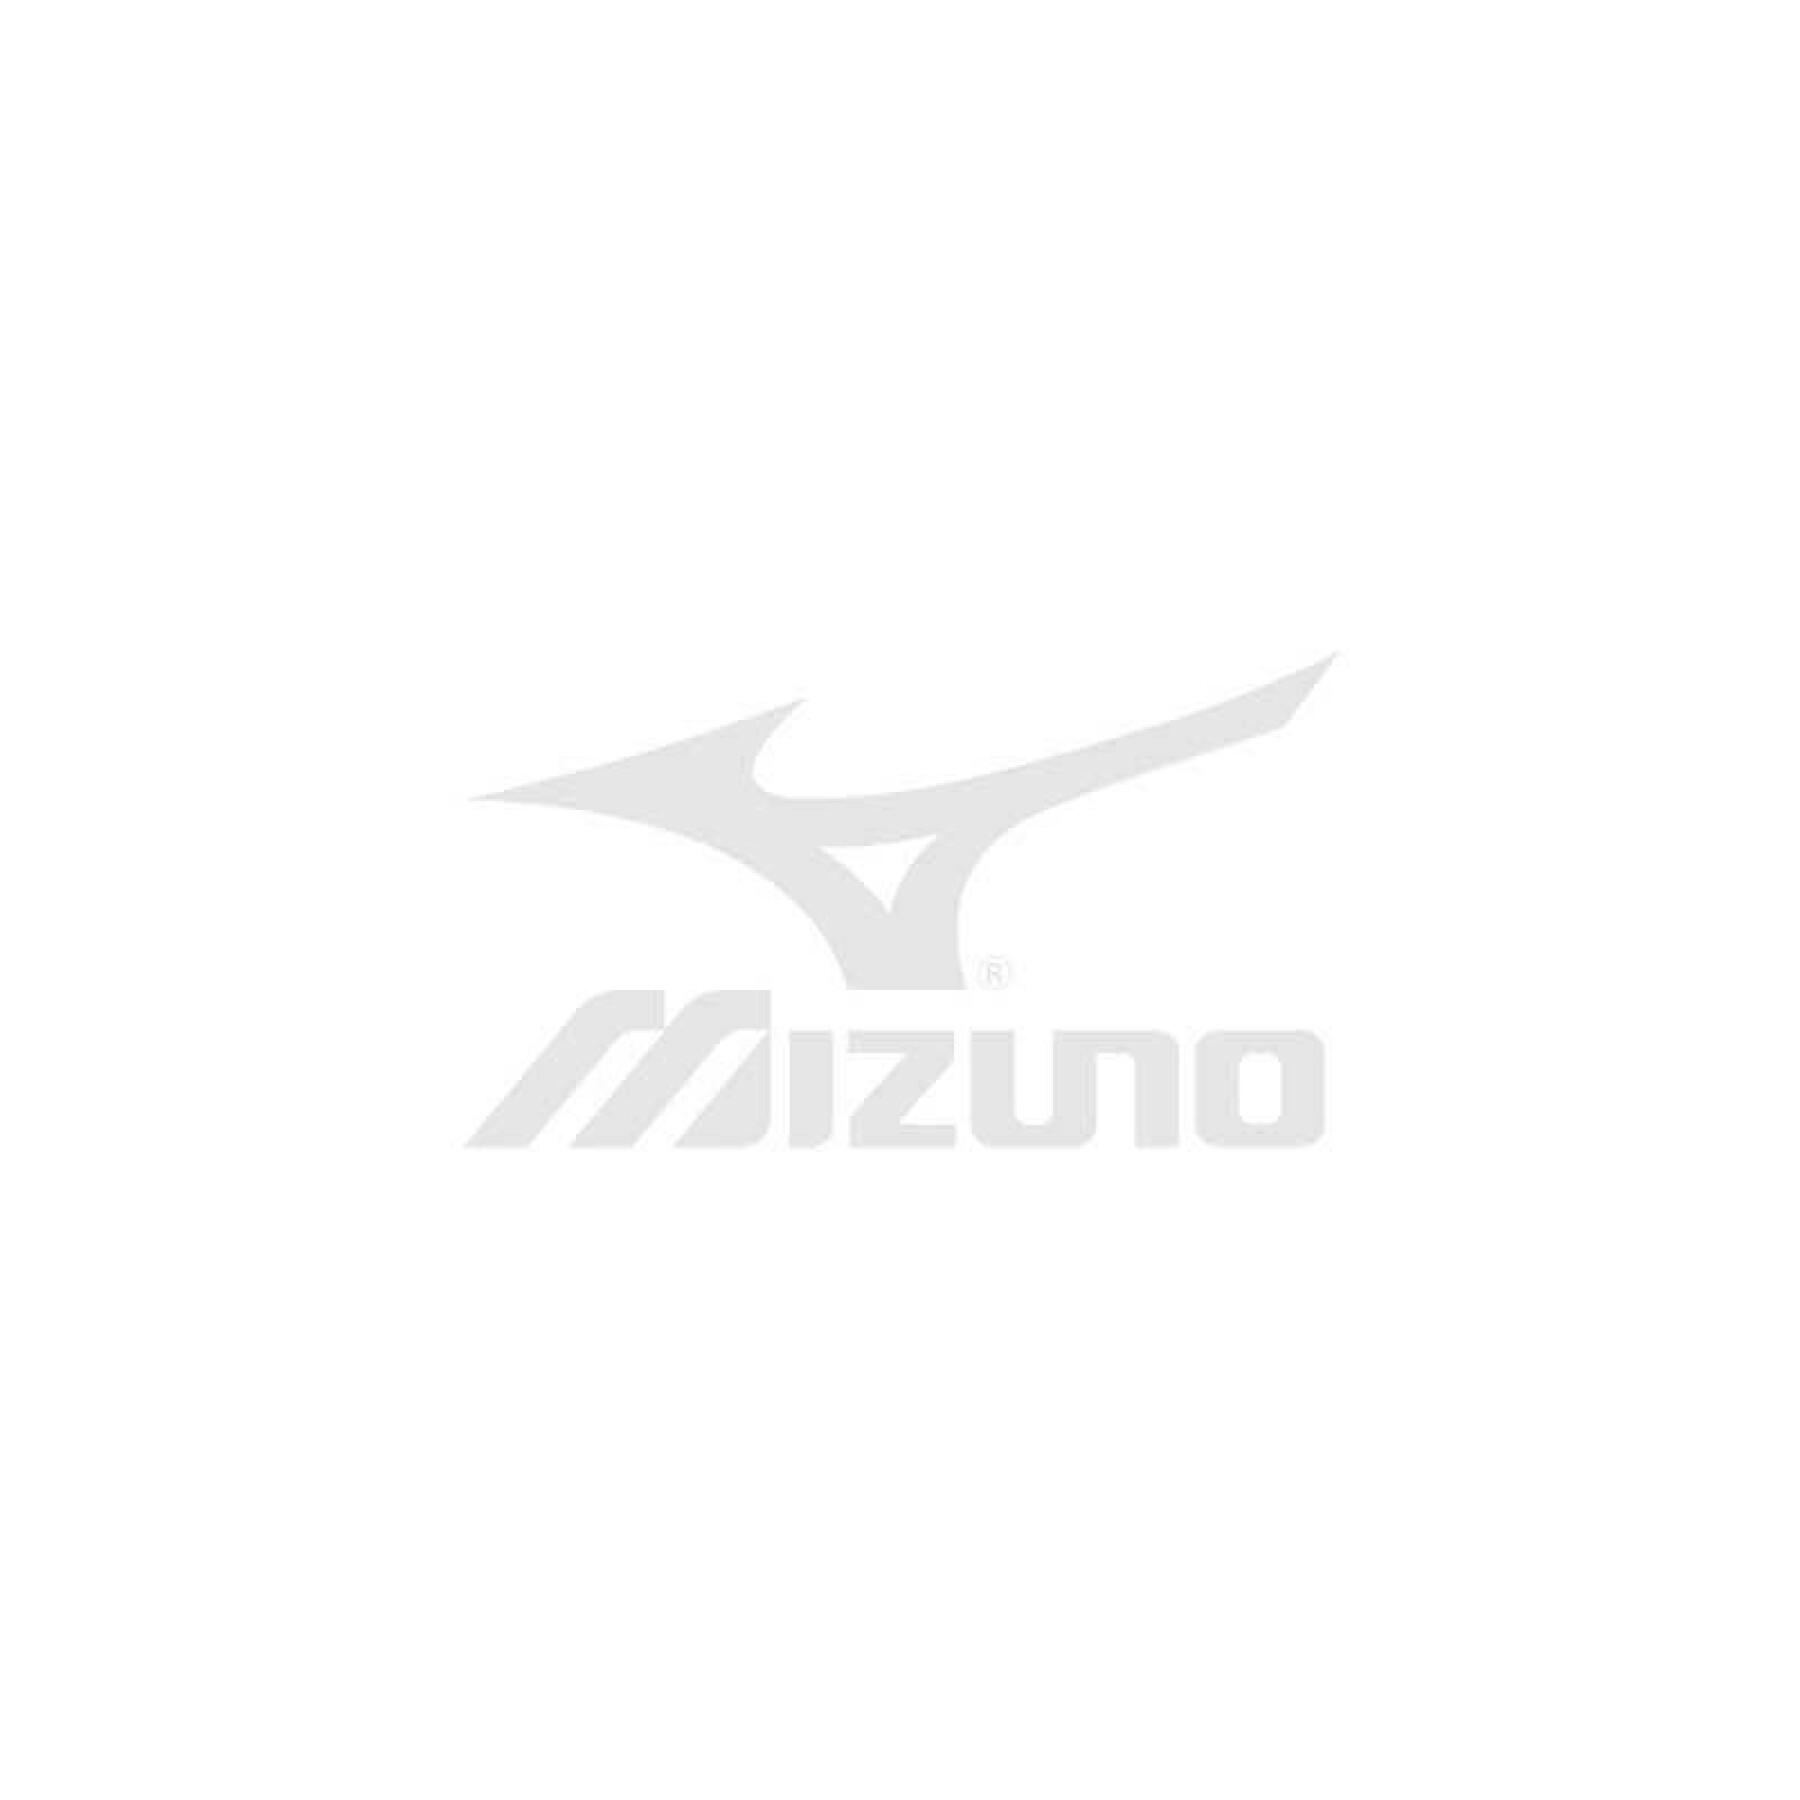 Chaussures de football Mizuno Monarcida Neo Select AG